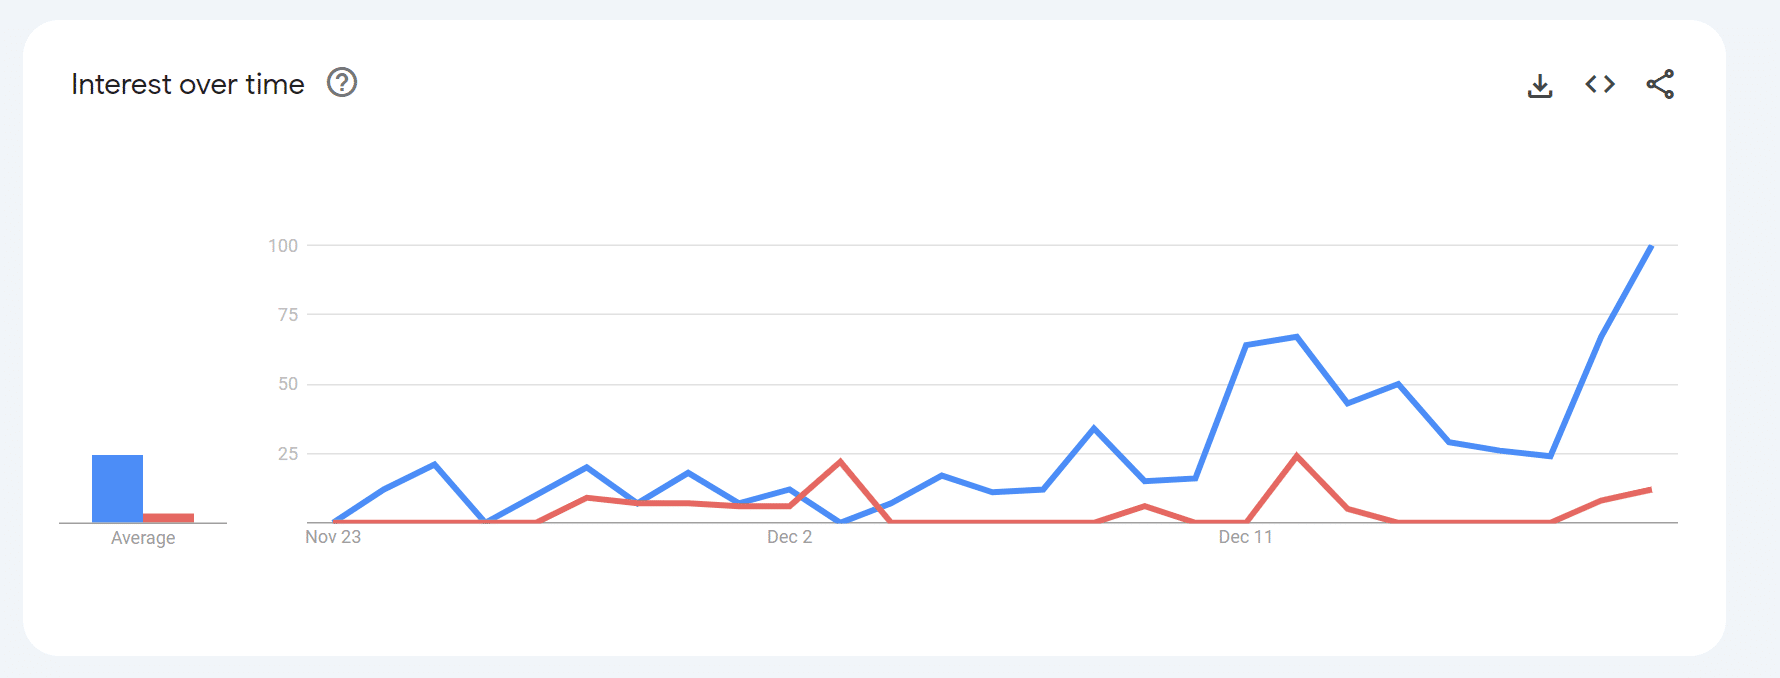 Injetivo vs Gorila: Google Trends